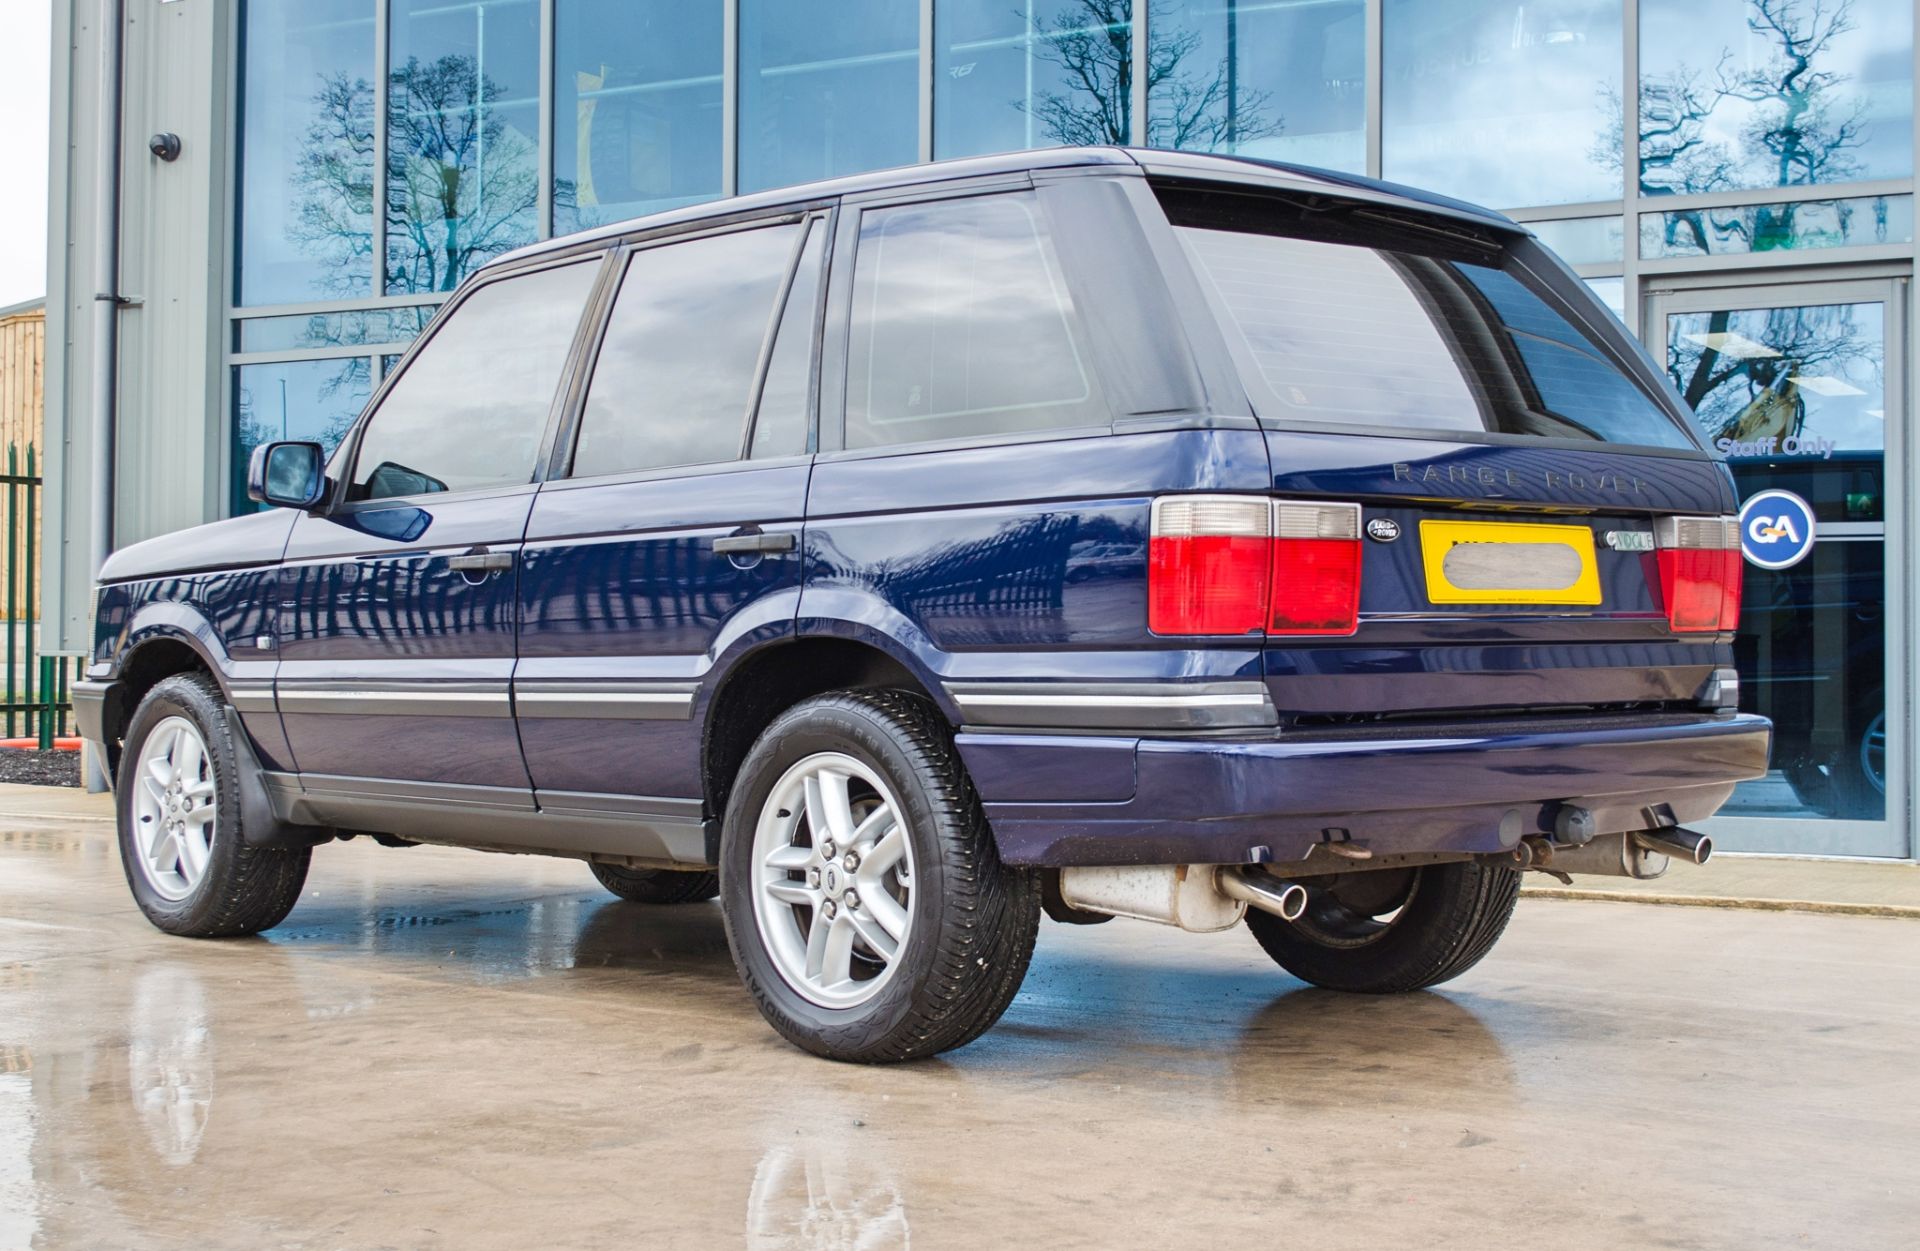 2001 Range Rover Vogue 4.6 litre V8 Auto 4 door SUV estate Registration: Y498 HNP Chassis: - Image 7 of 65